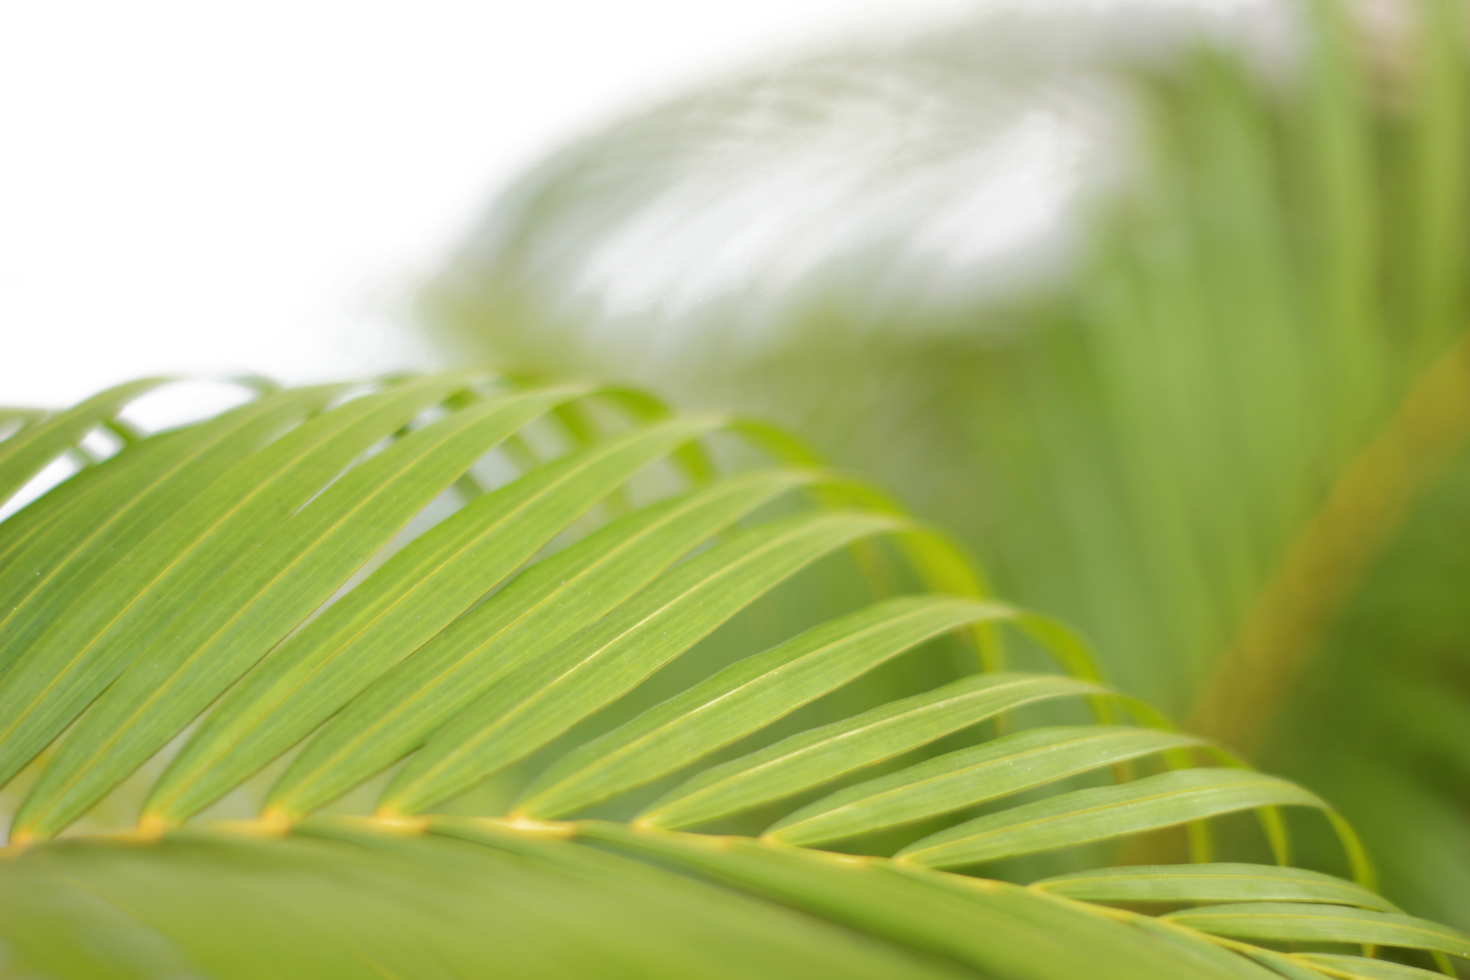 verde tropicale ramo palma foglia con ombra su trasparente sfondo png file